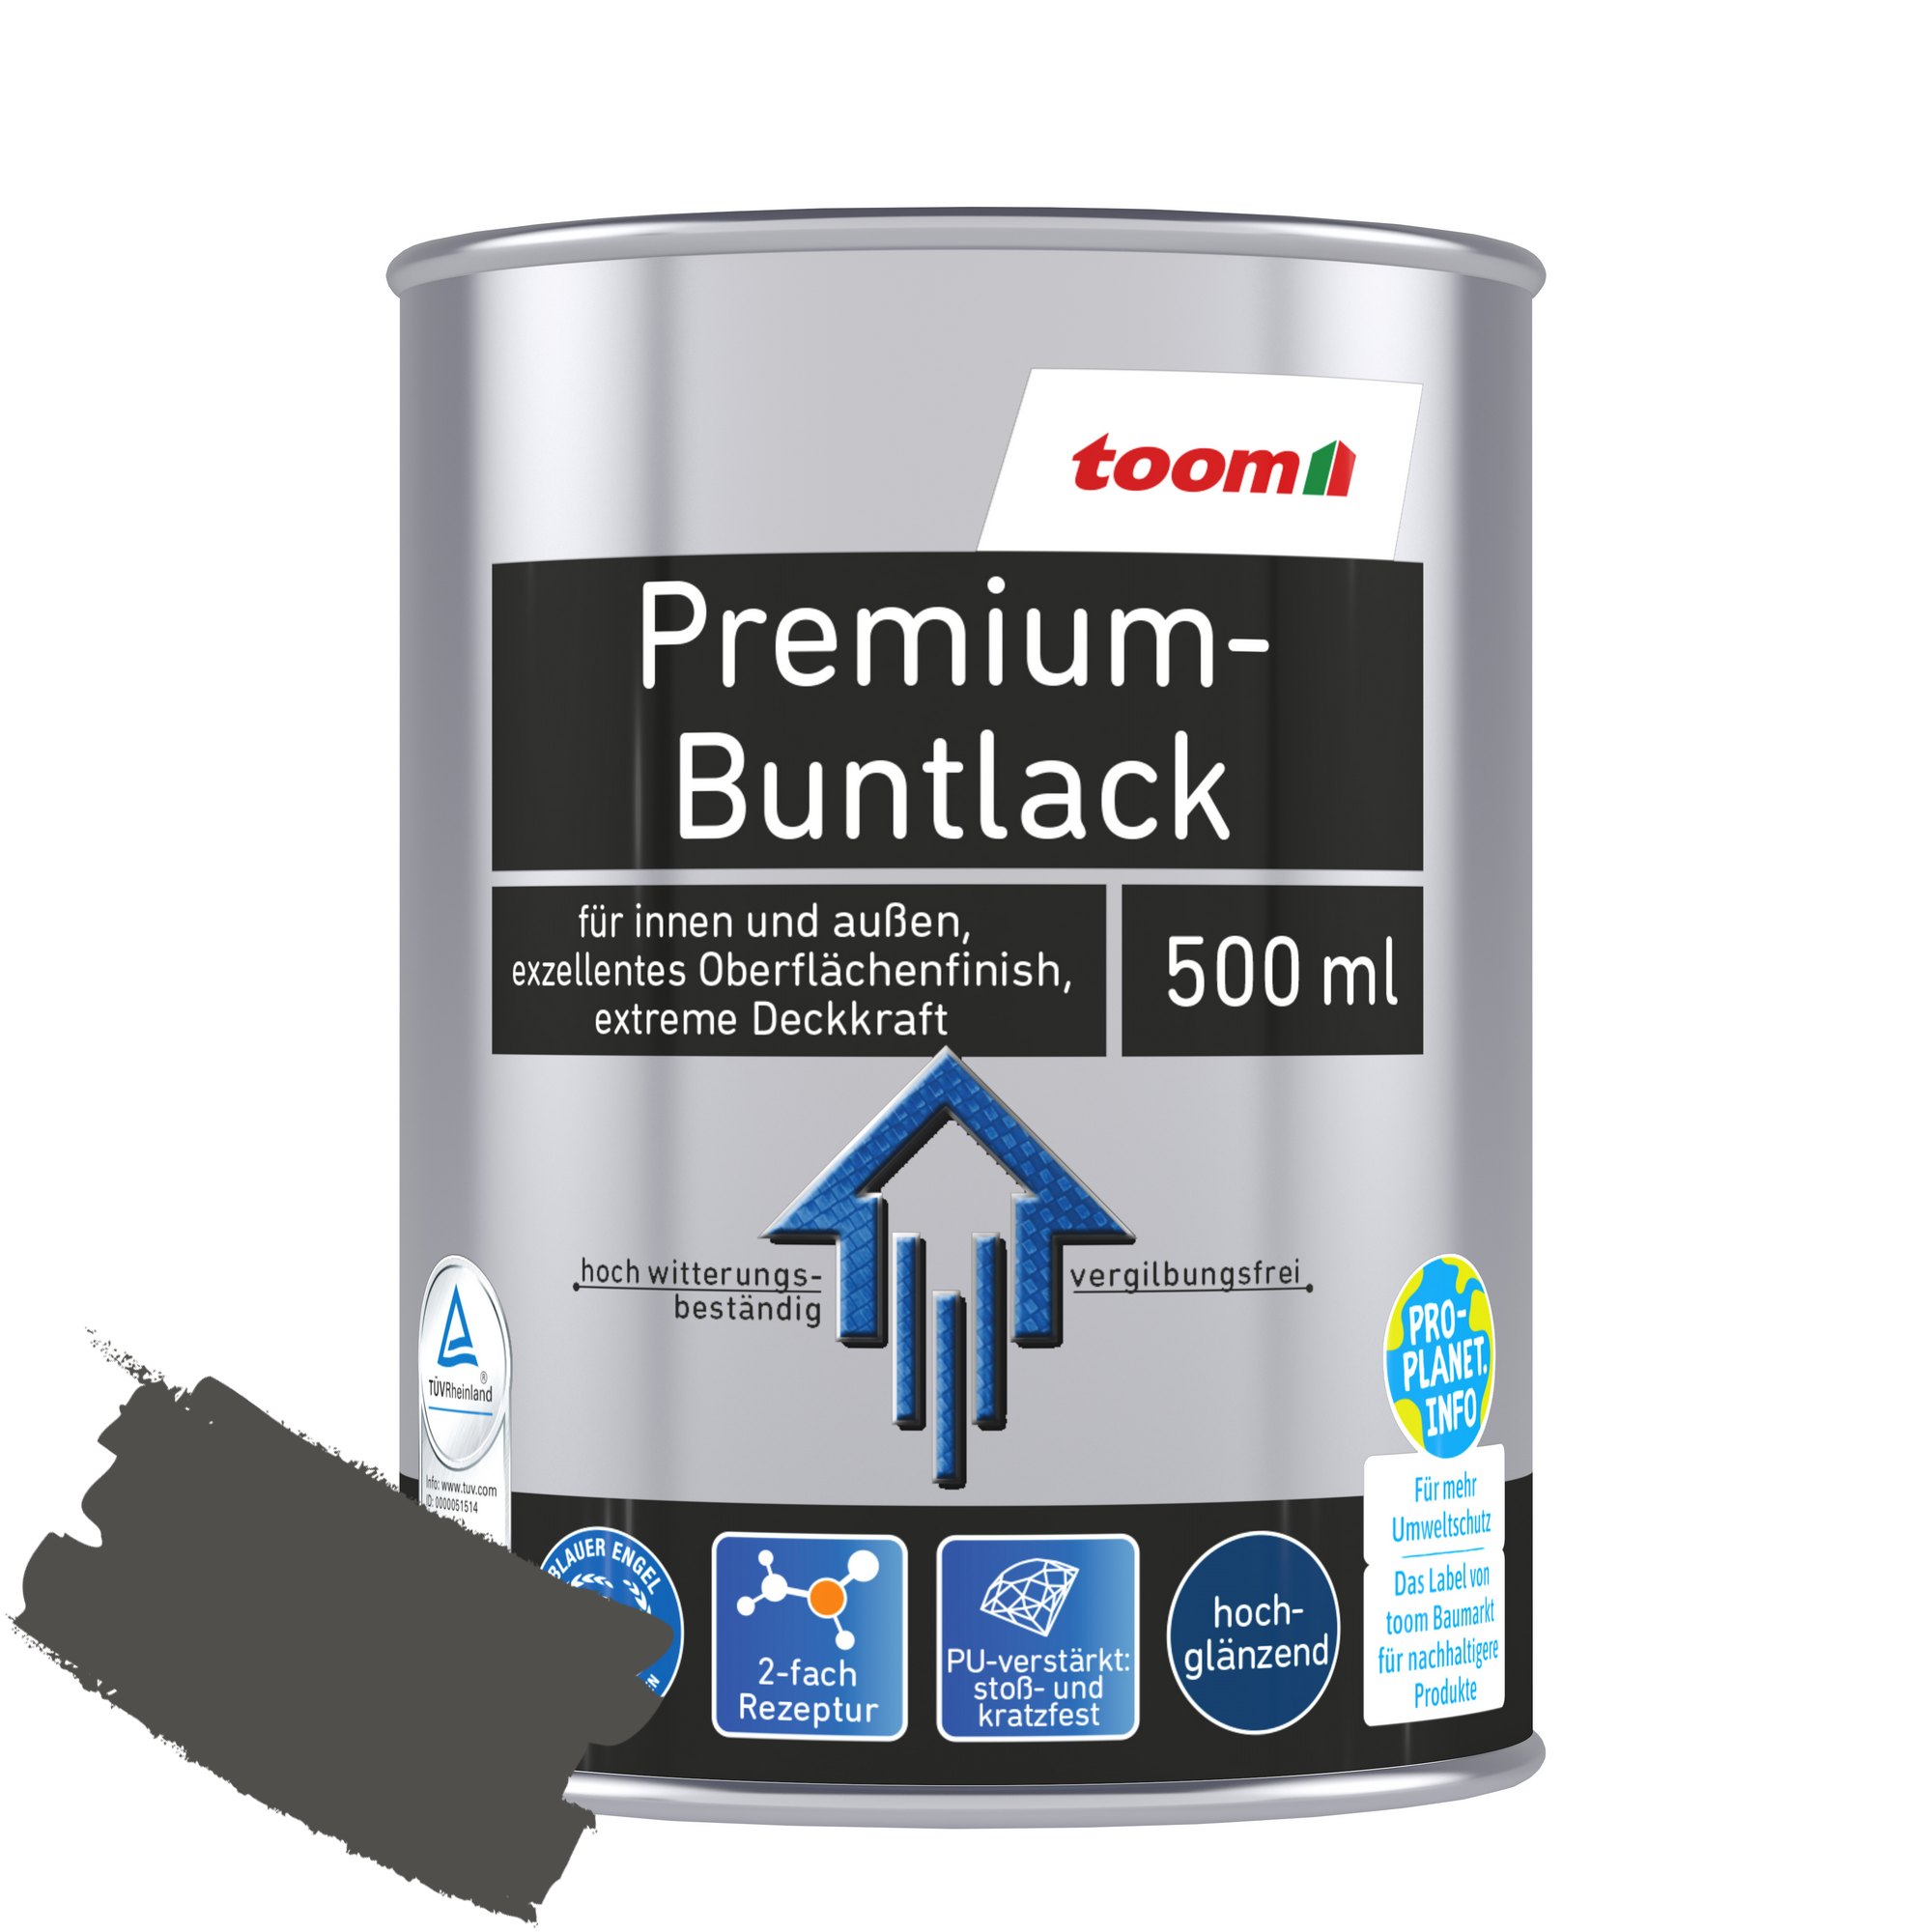 Premium-Buntlack silberfarben glänzend 500 ml + product picture